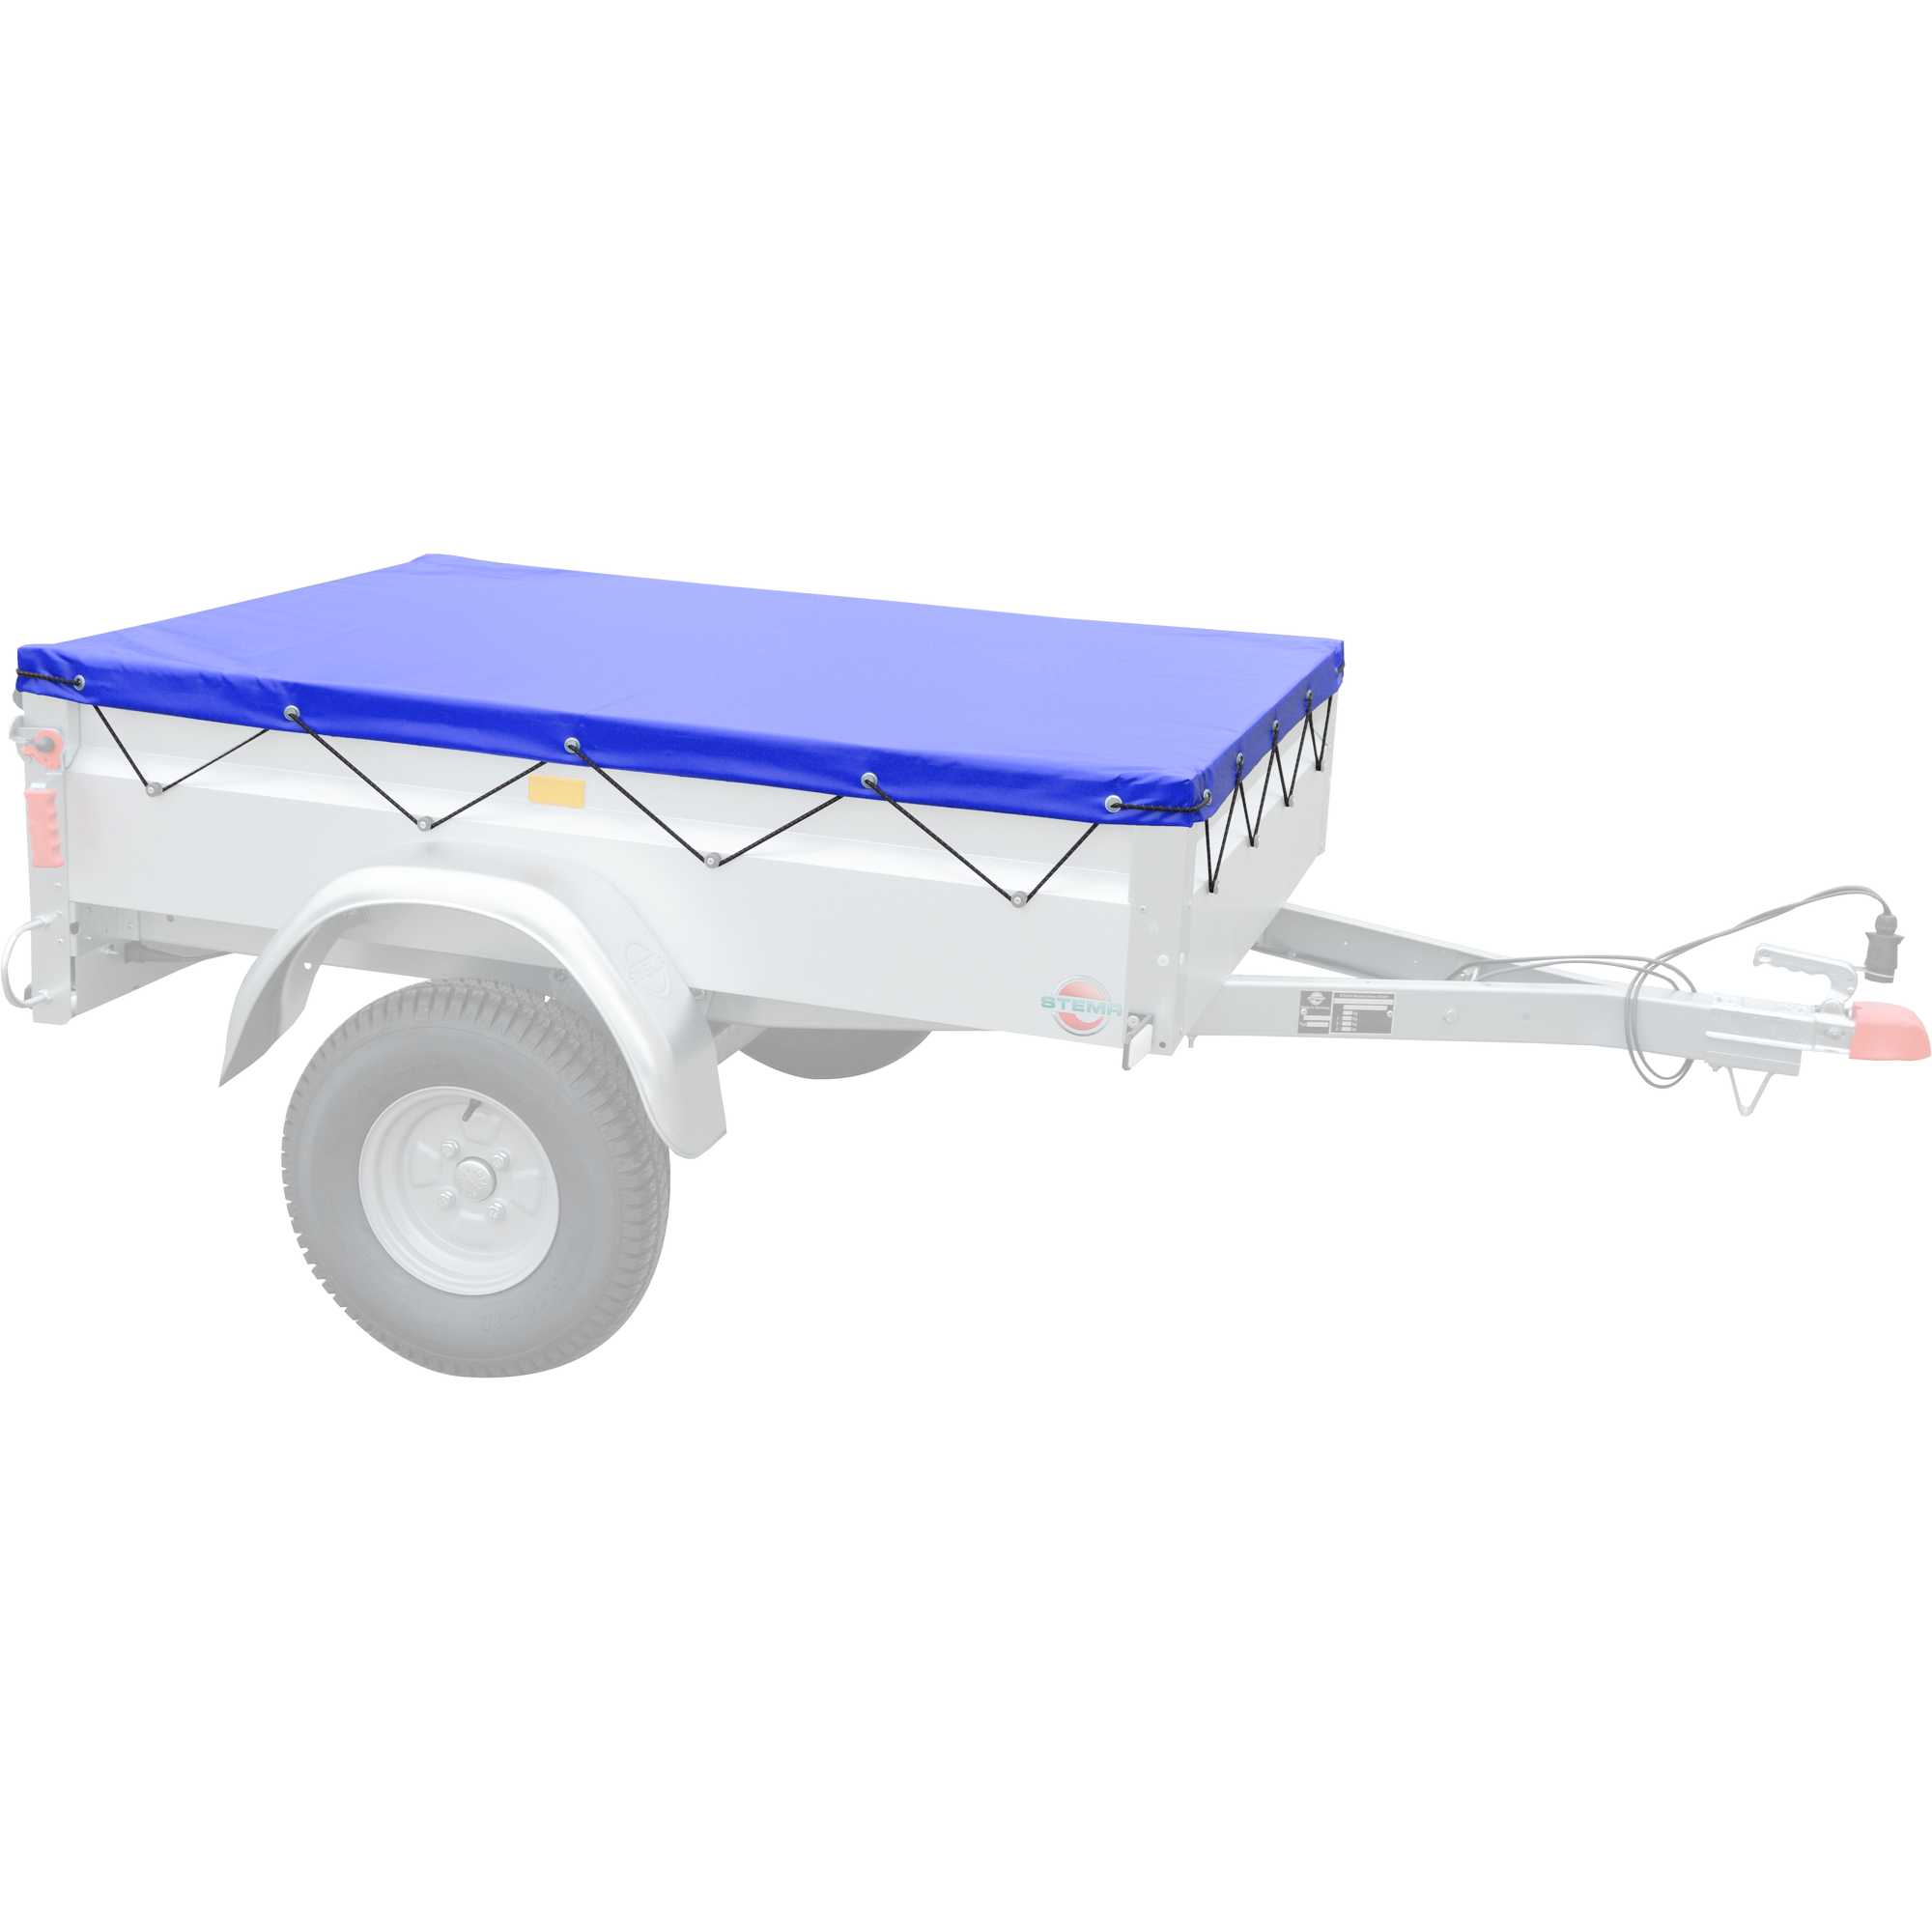 Flachplane blau für Pkw-Anhänger AN 750 und BASIC 1000 + product picture